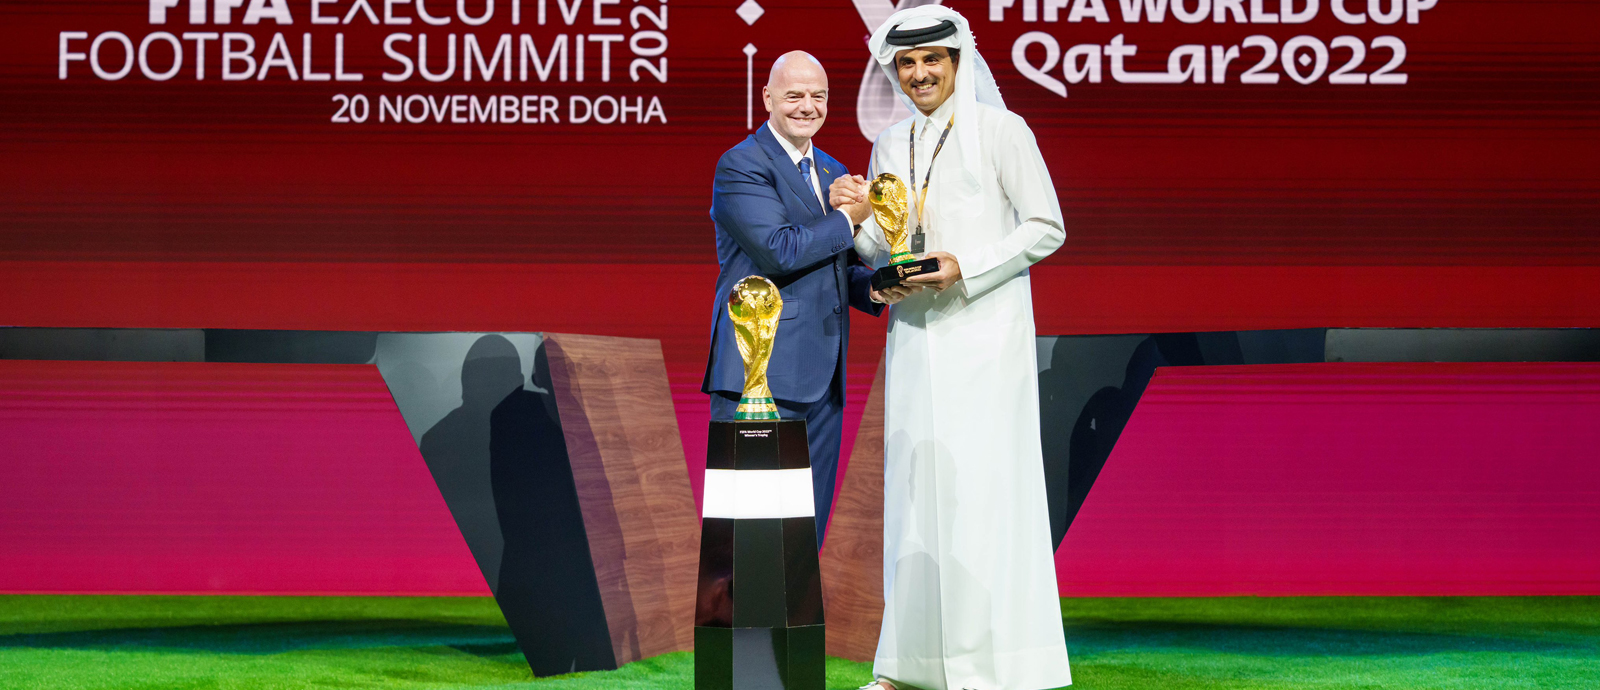 سمو الأمير يشارك في القمة التنفيذية للاتحاد الدولي لكرة القدم